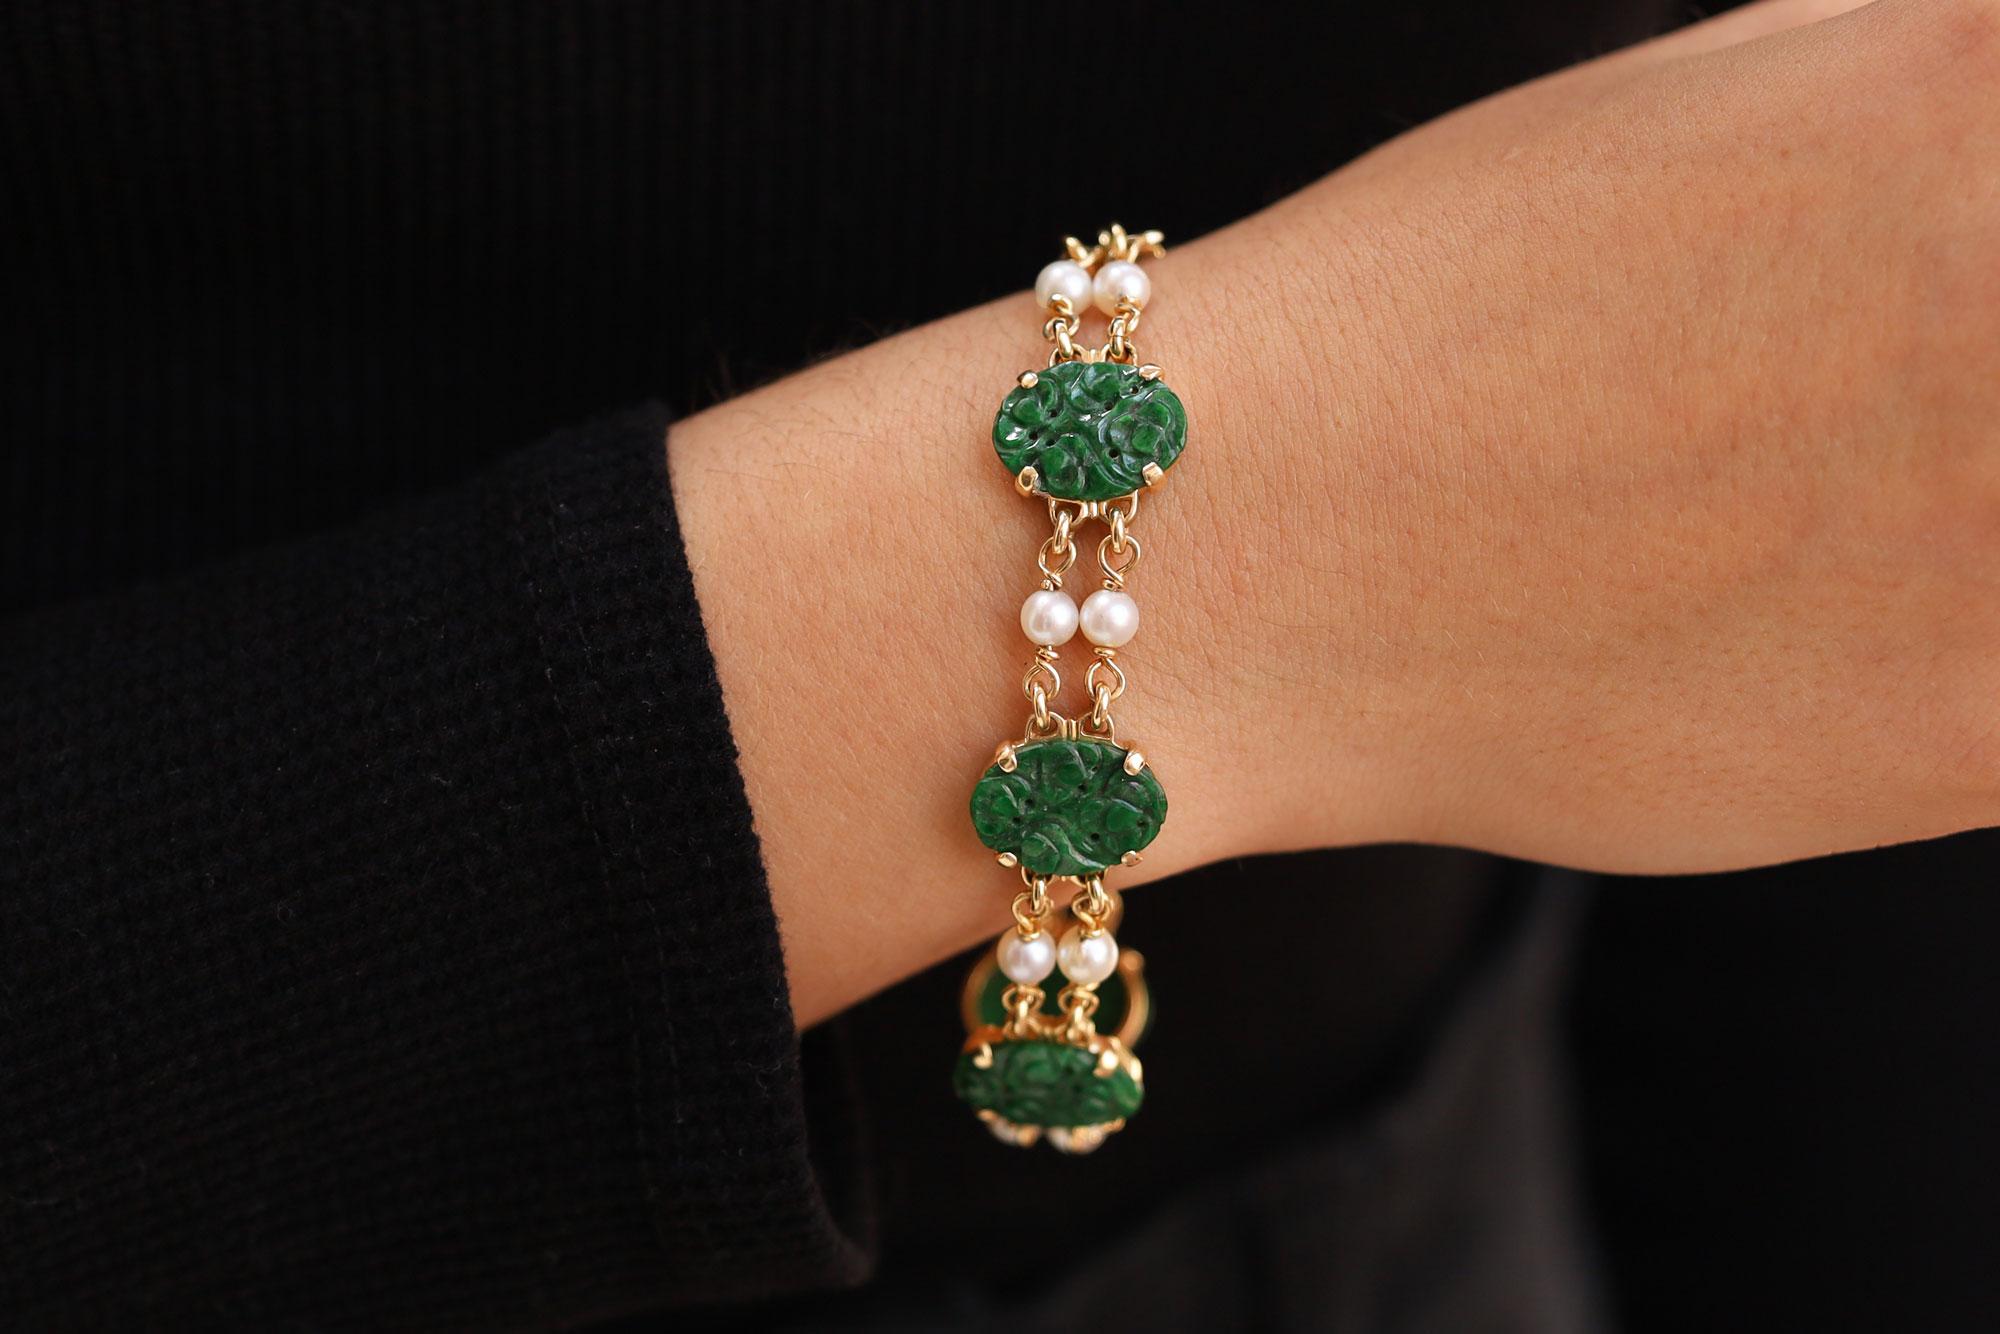 La jadéite naturelle, non traitée, de type A de ce charmant bracelet de station présente une couleur verte vibrante et marbrée dans les plaques ovales ondulantes sculptées. La beauté incomparable de l'époque de l'Art Nouveau est illustrée par ce